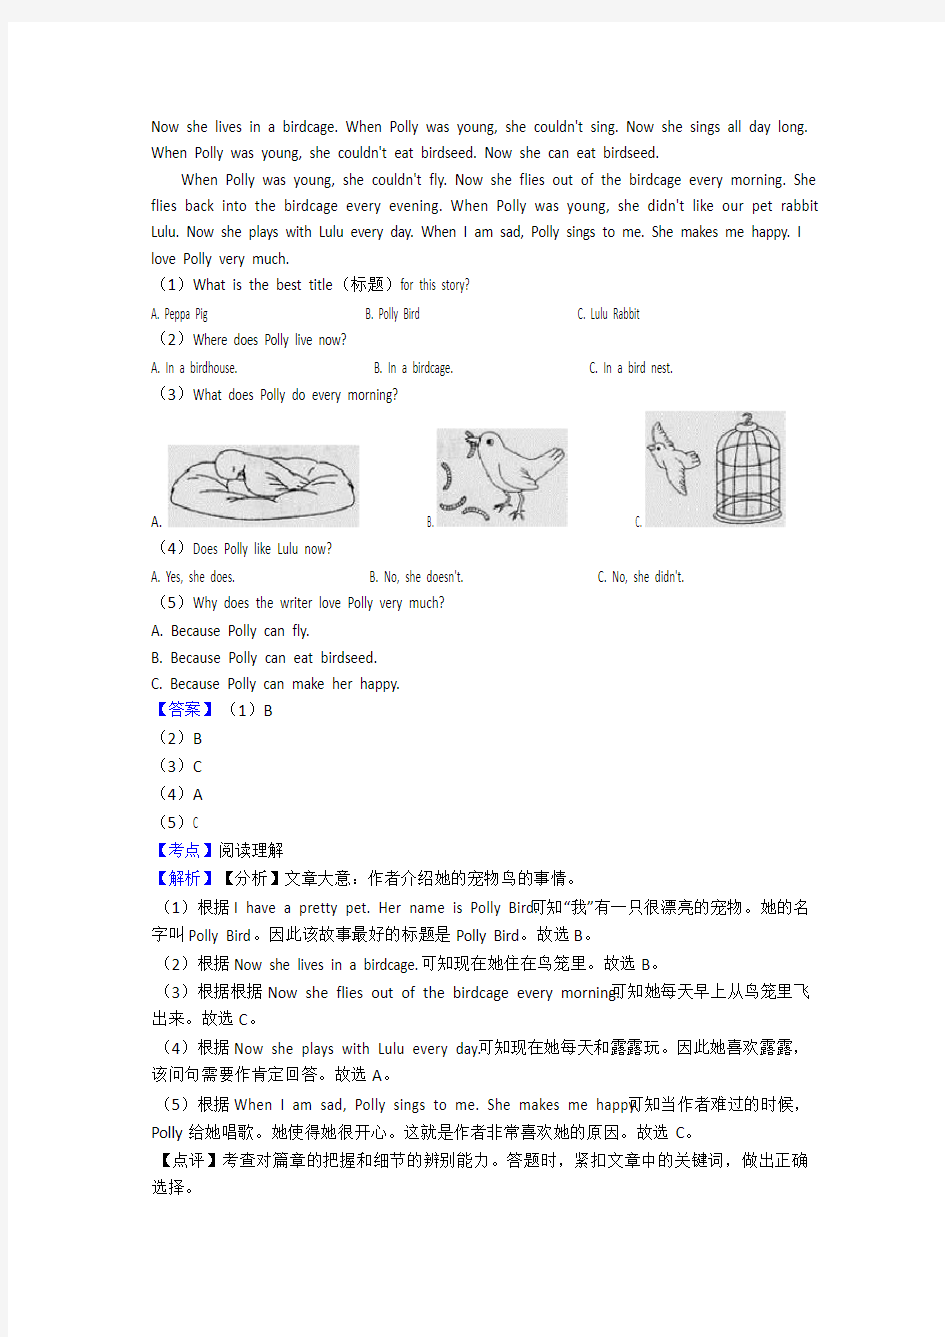 小升初六年级北京市小学英语阅读理解复习题(含答案)